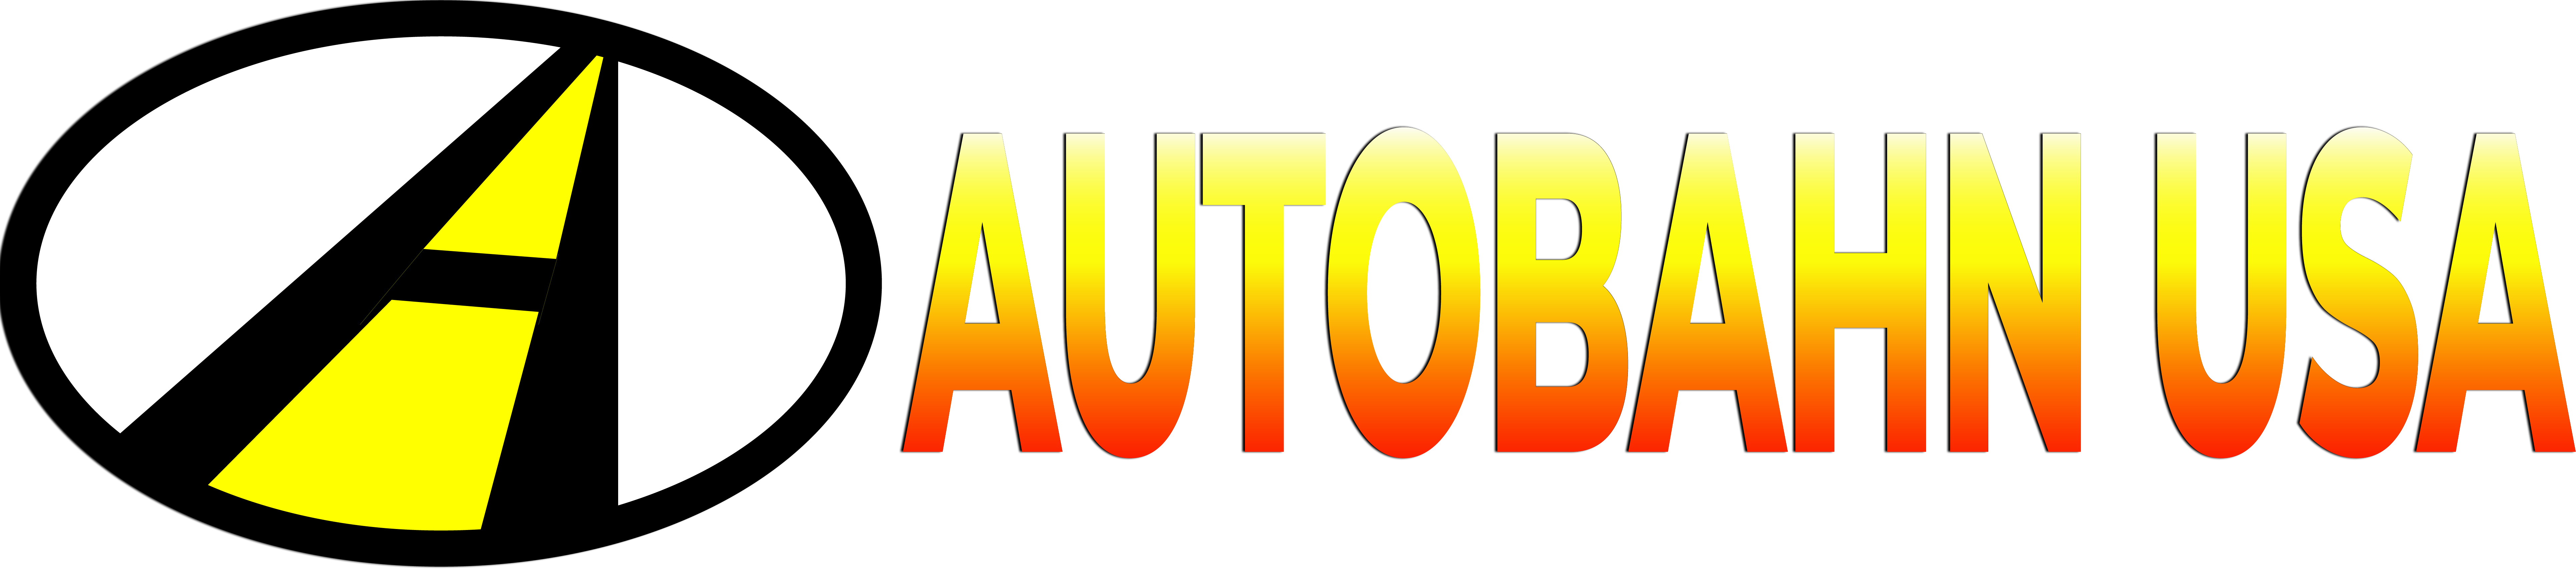 autobahn usa logo